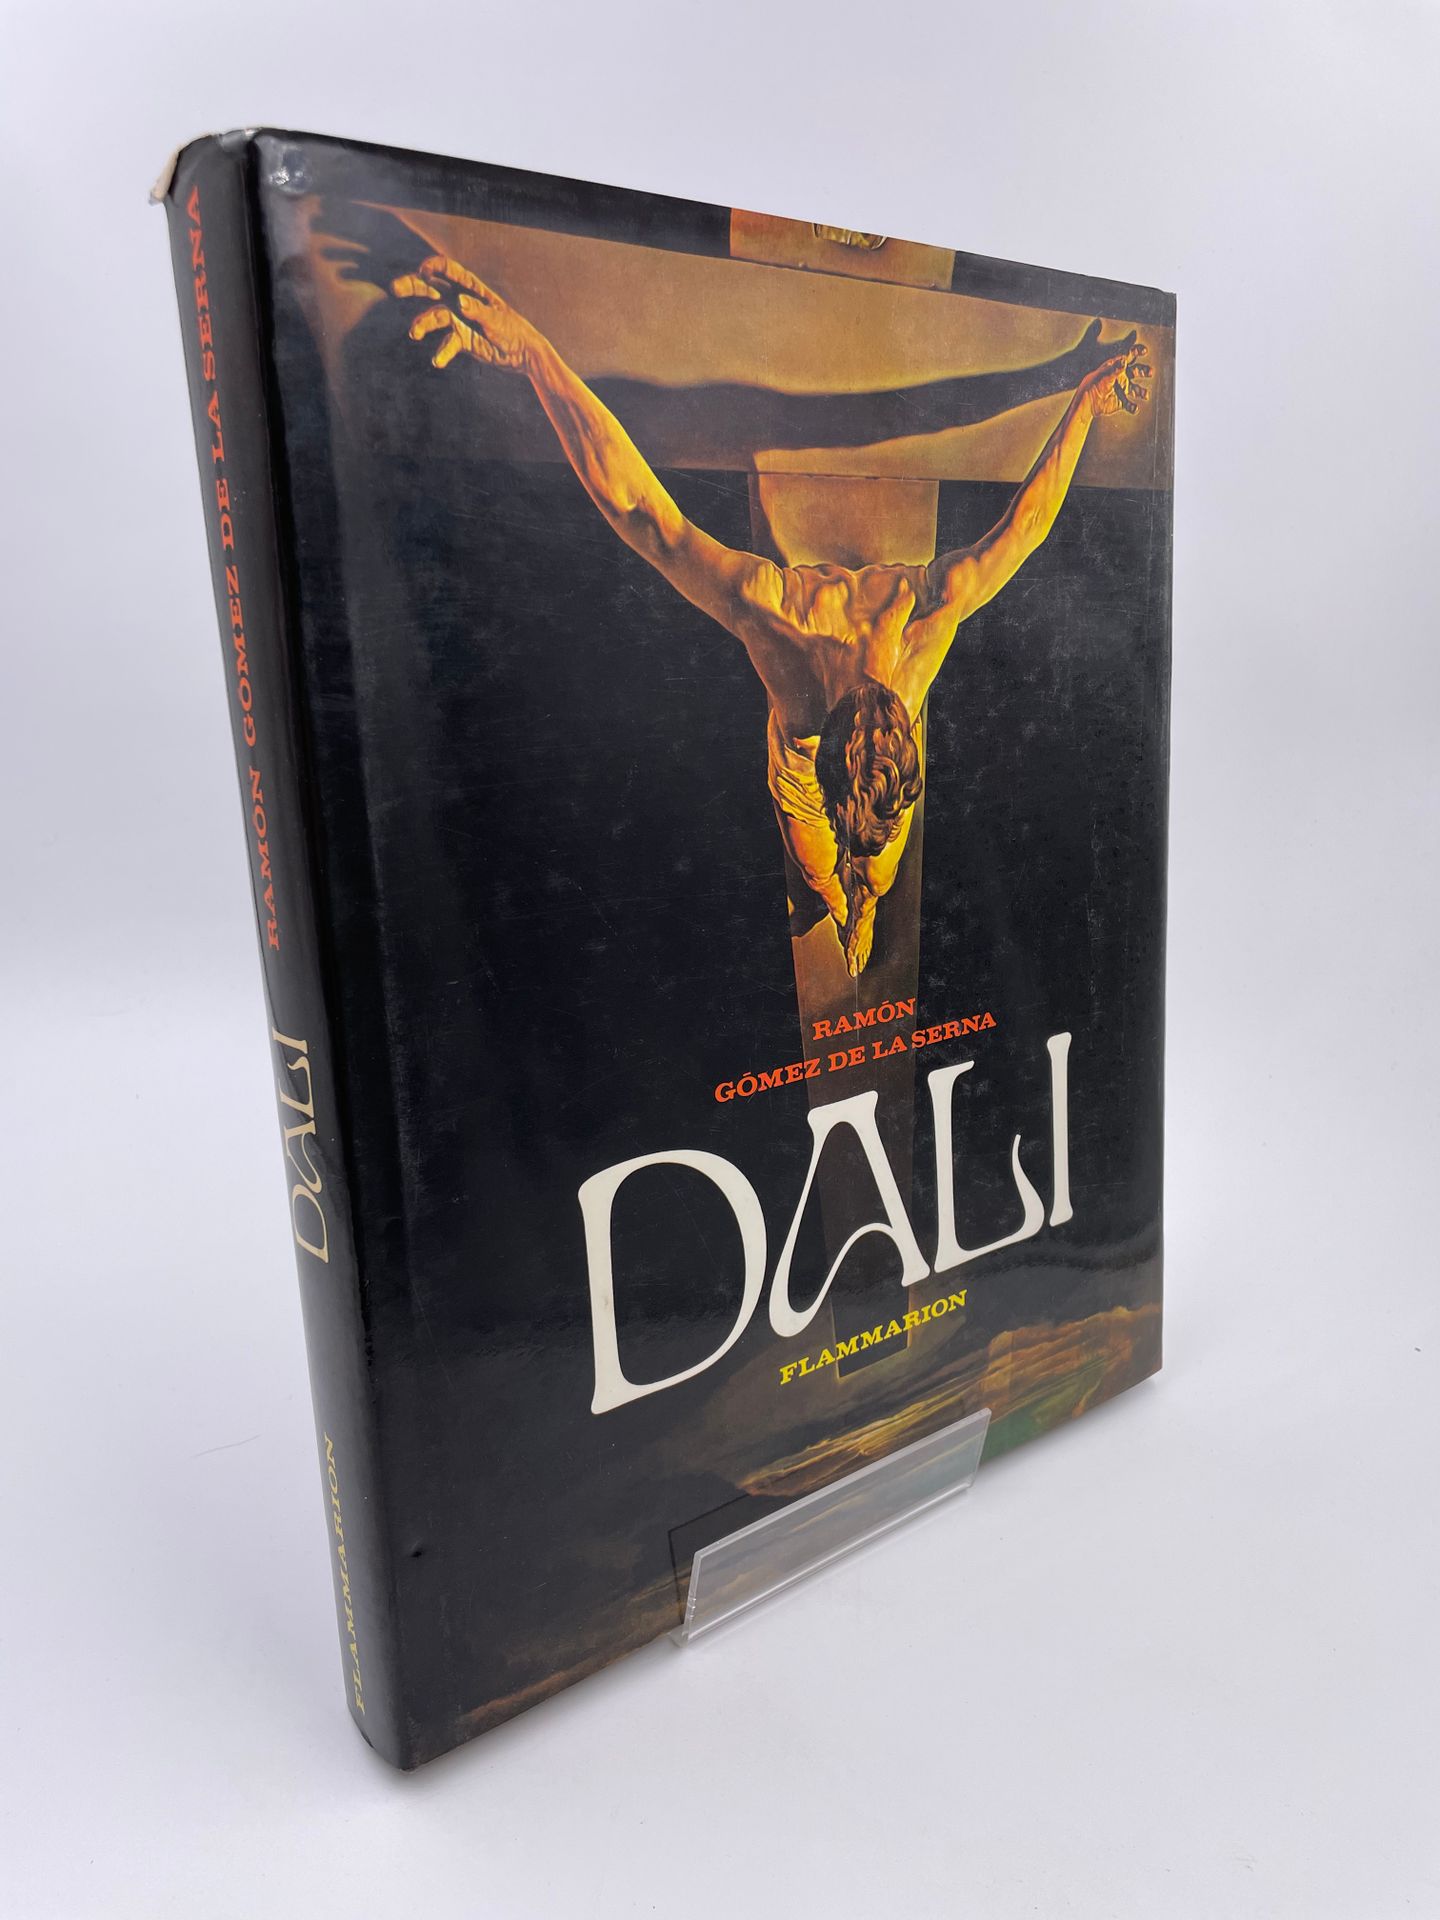 Null 1 Volume : "Dali", Ramon Gomez de la Serna, Ed. Flammarion, 1979

"DÉLIVRAN&hellip;